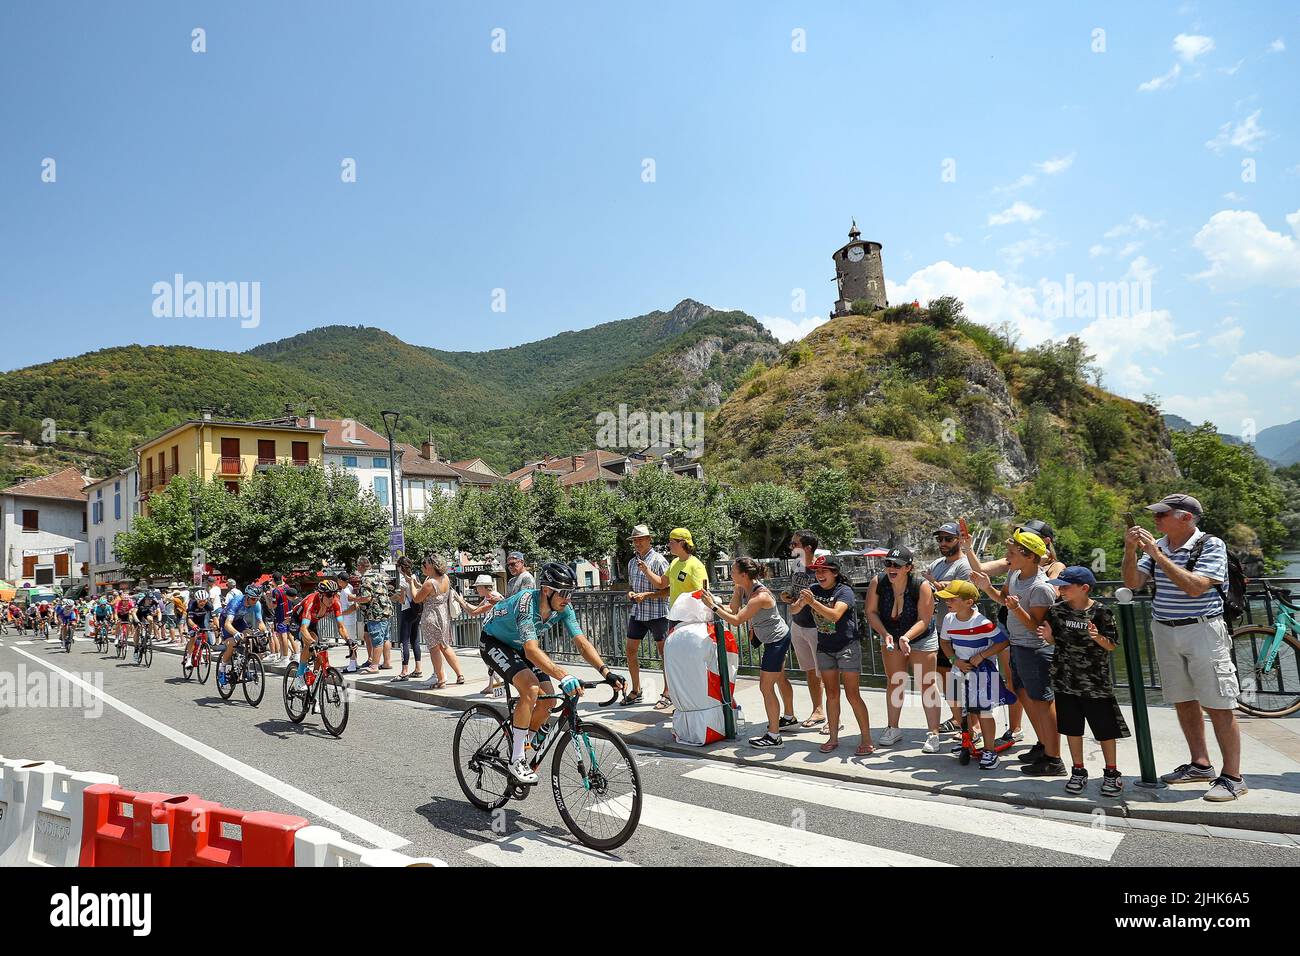 Le pack de cavaliers photographiés en action pendant la huitième étape de la course cycliste Tour de France, de Carcassonne à Foix (179km), le mardi 19 juillet 2022. Le Tour de France de cette année a lieu du 01 au 24 juillet 2022. BELGA PHOTO DAVID PINTENS - SORTIE ROYAUME-UNI Banque D'Images